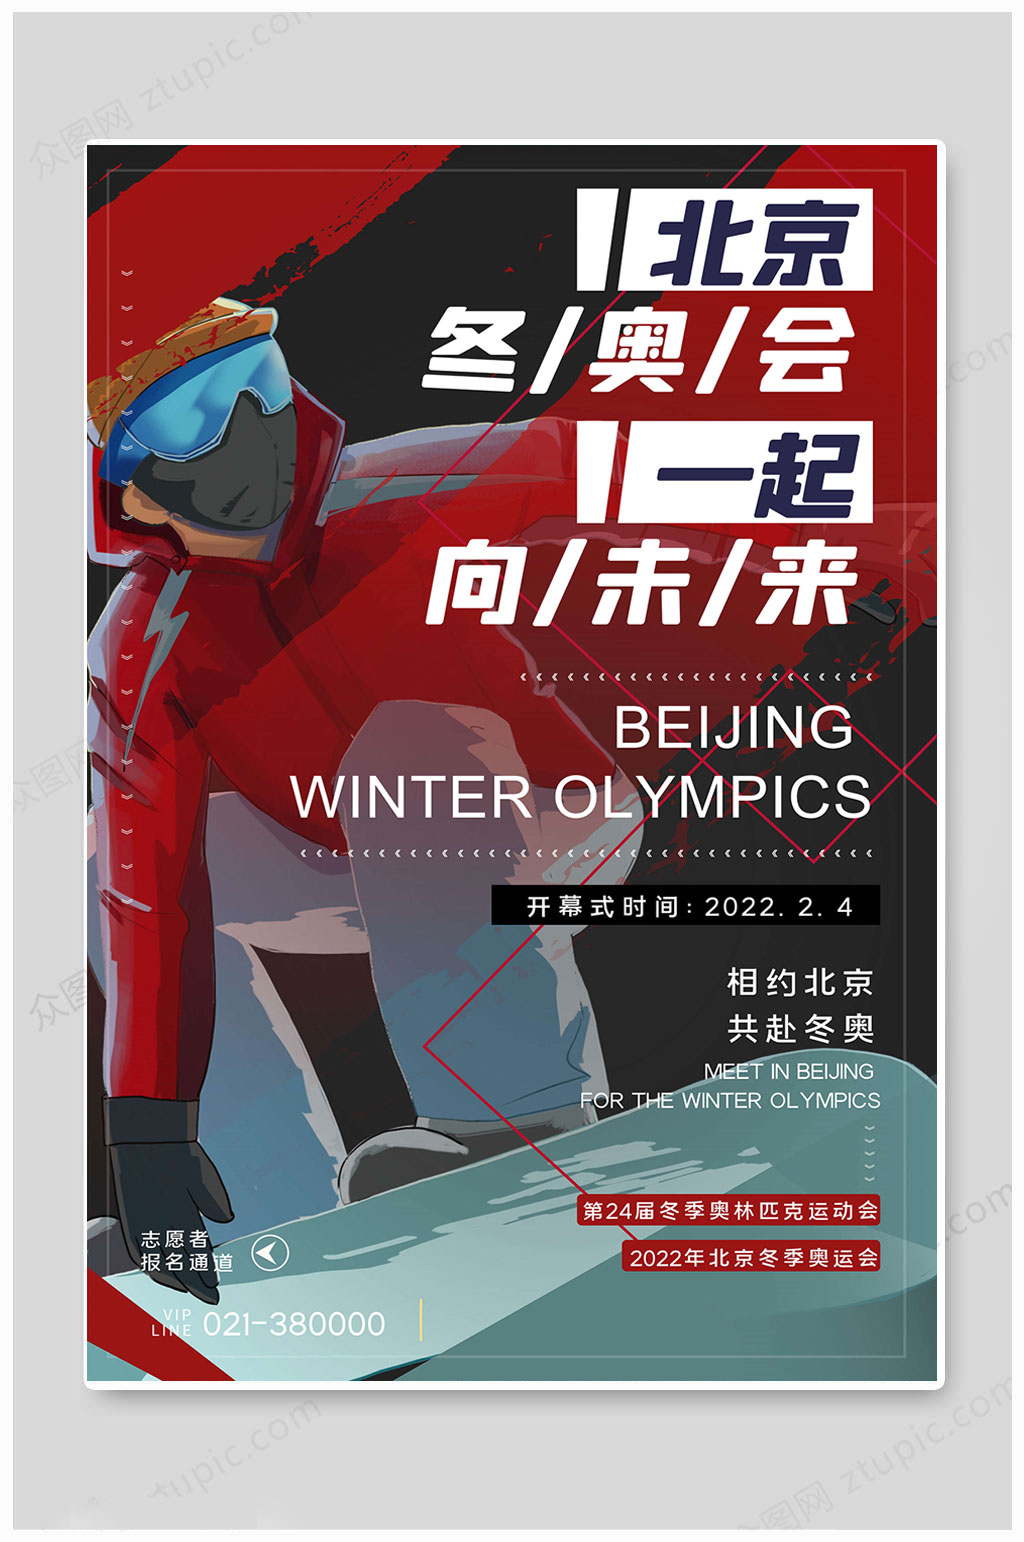 众图网独家提供红色北京冬奥会海报素材免费下载,本作品是由凎上传的